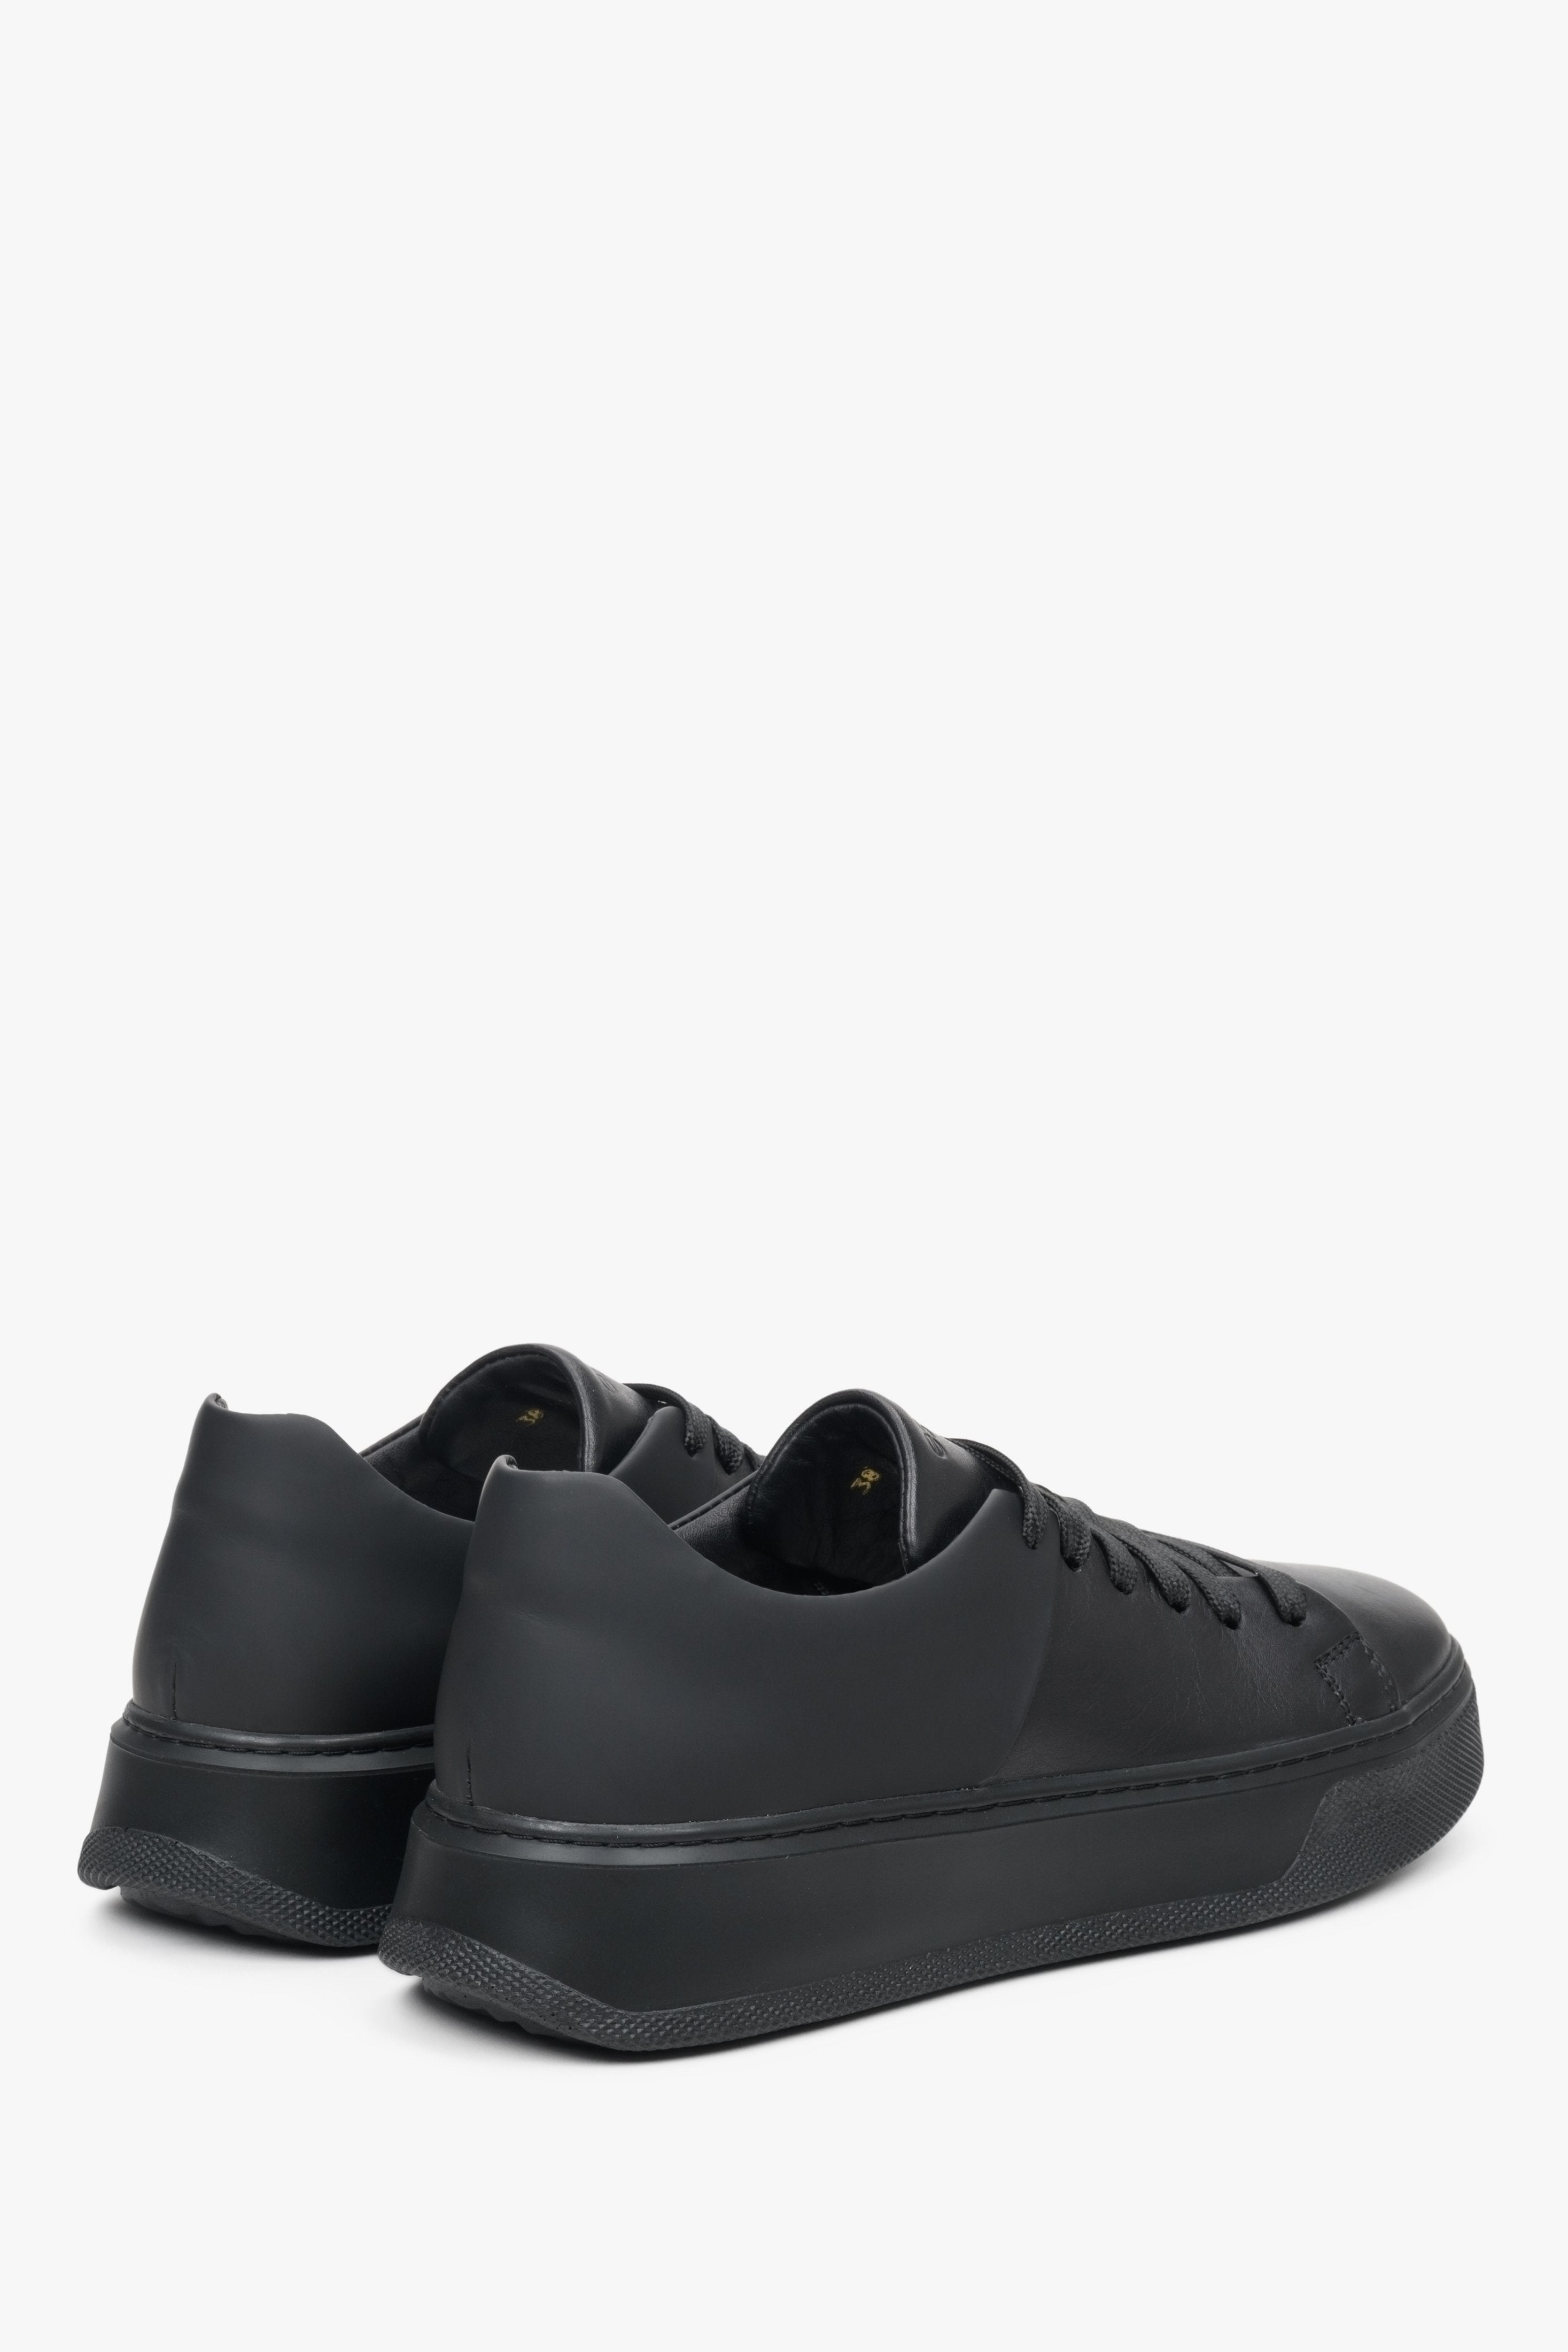 Sneakersy damskie skórzane w kolorze czarnym marki Estro - prezentacja zapiętka i przyszwy bocznej buta.